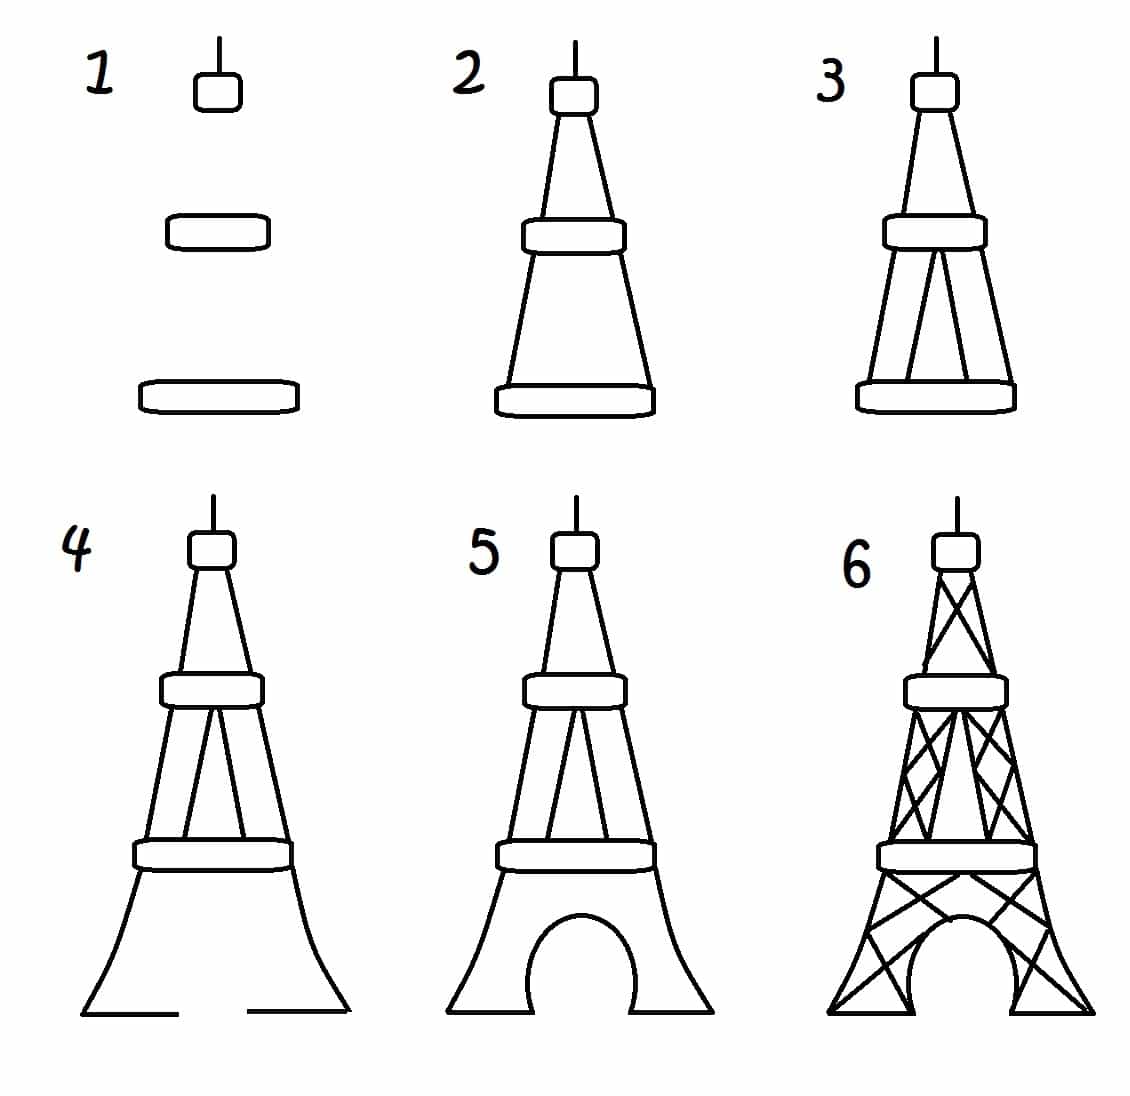 Apprendre à dessiner la Tour Eiffel en 3 étapes